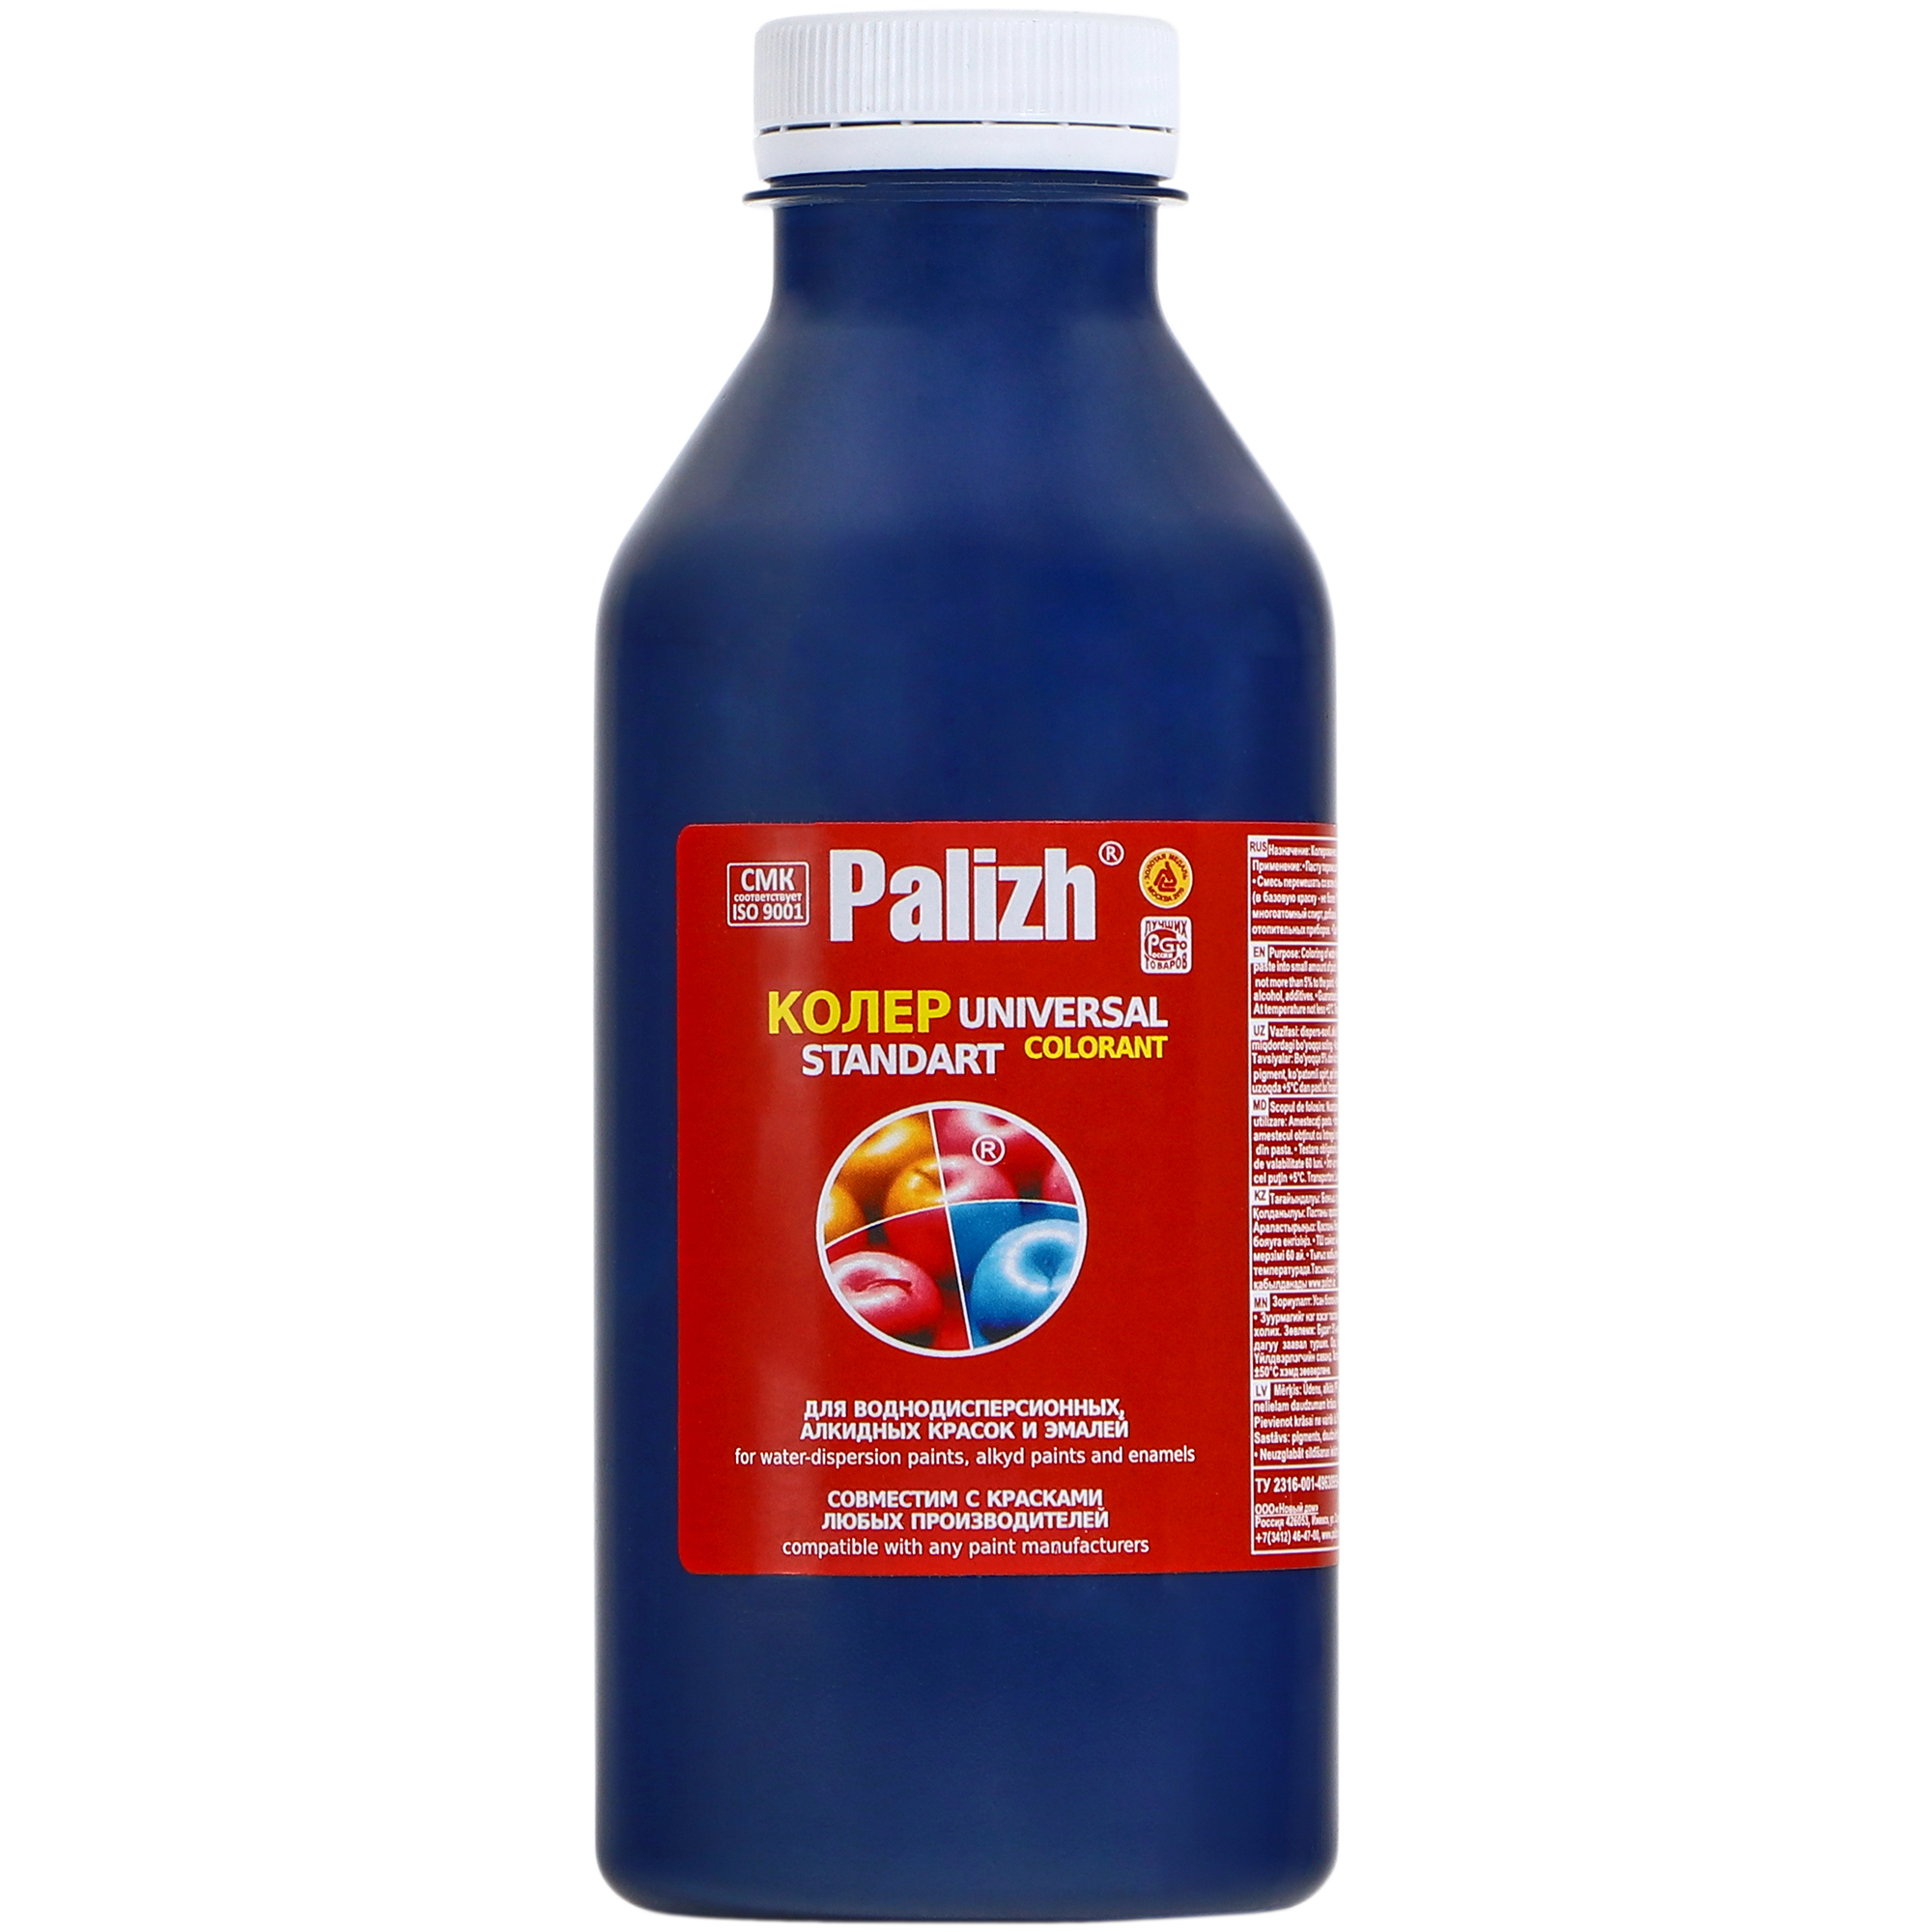 Паста универсальная колеровочная Palizh темно-синий - 450 мл паста универсальная колеровочная palizh синий 450 мл